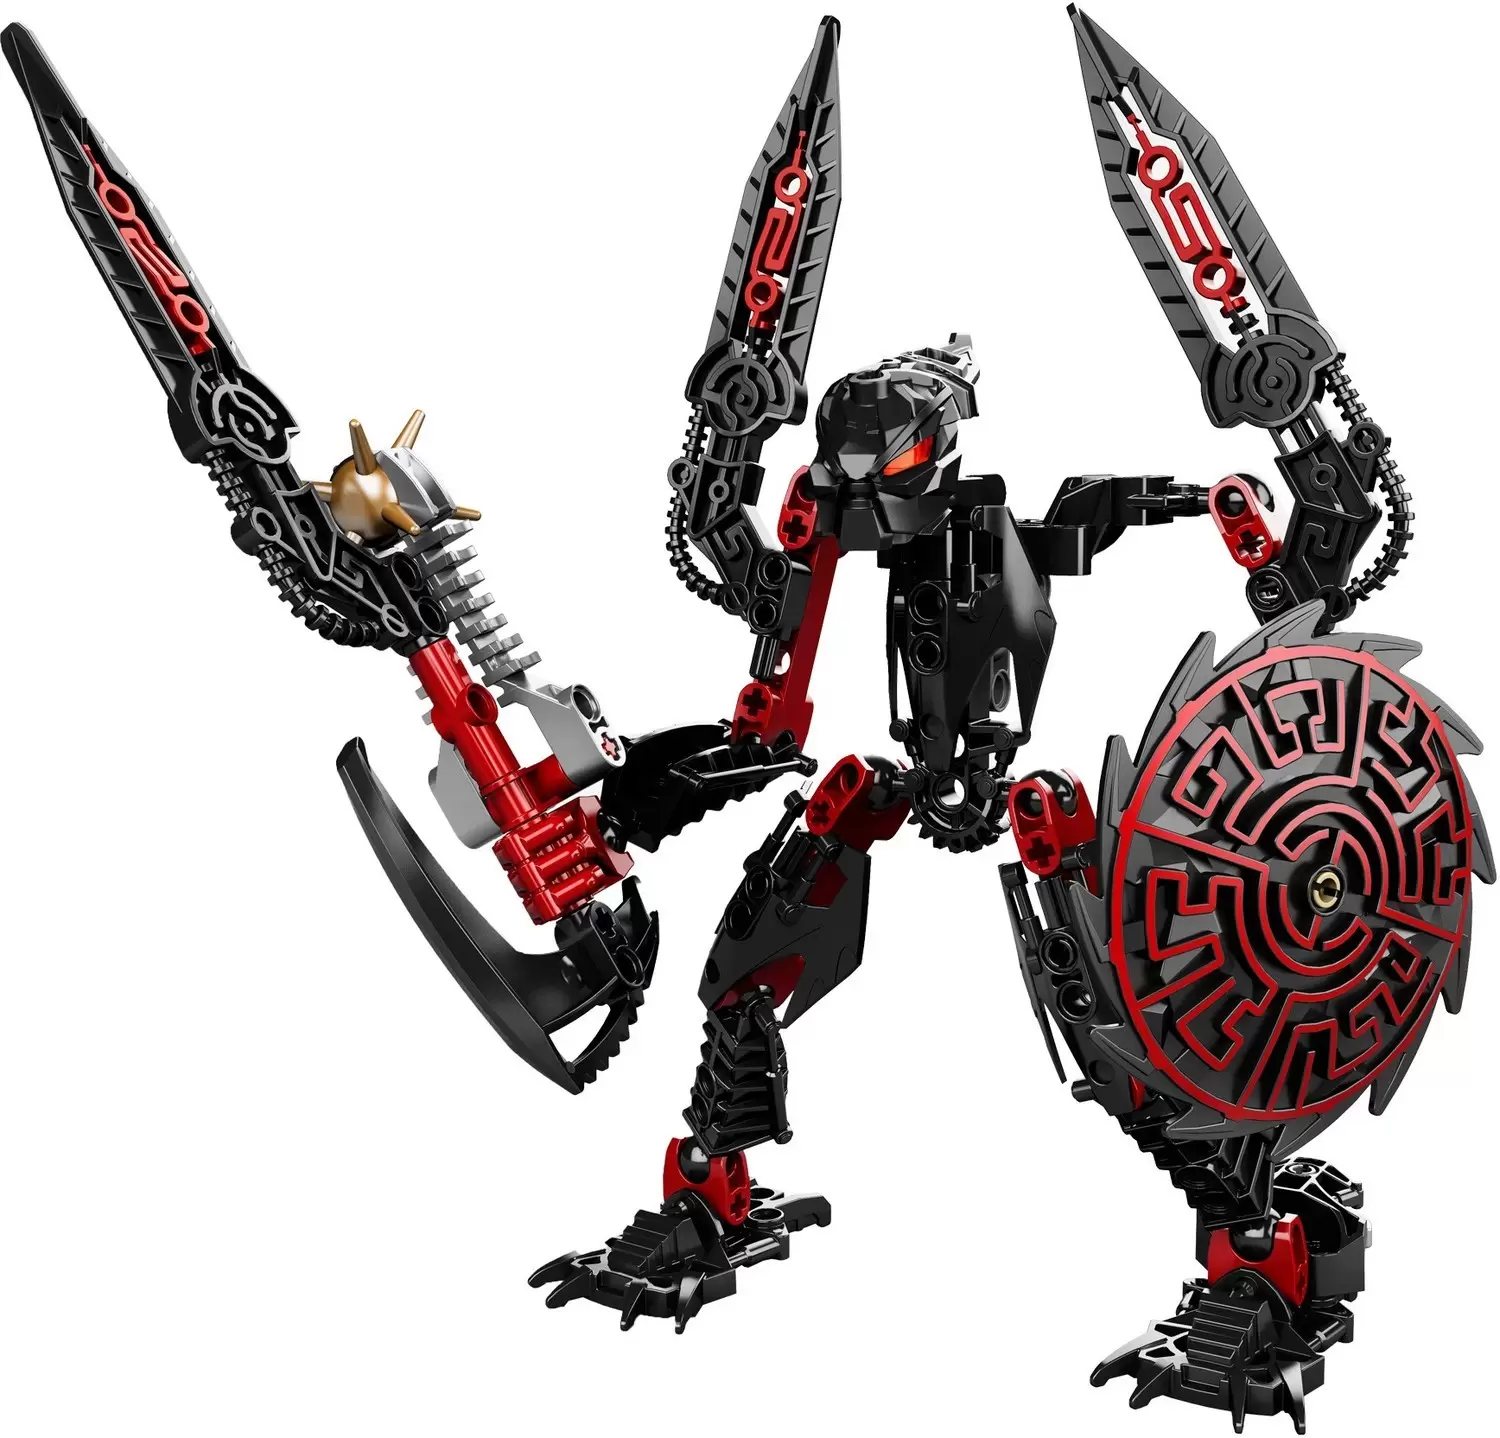 LEGO Bionicle - Skrall